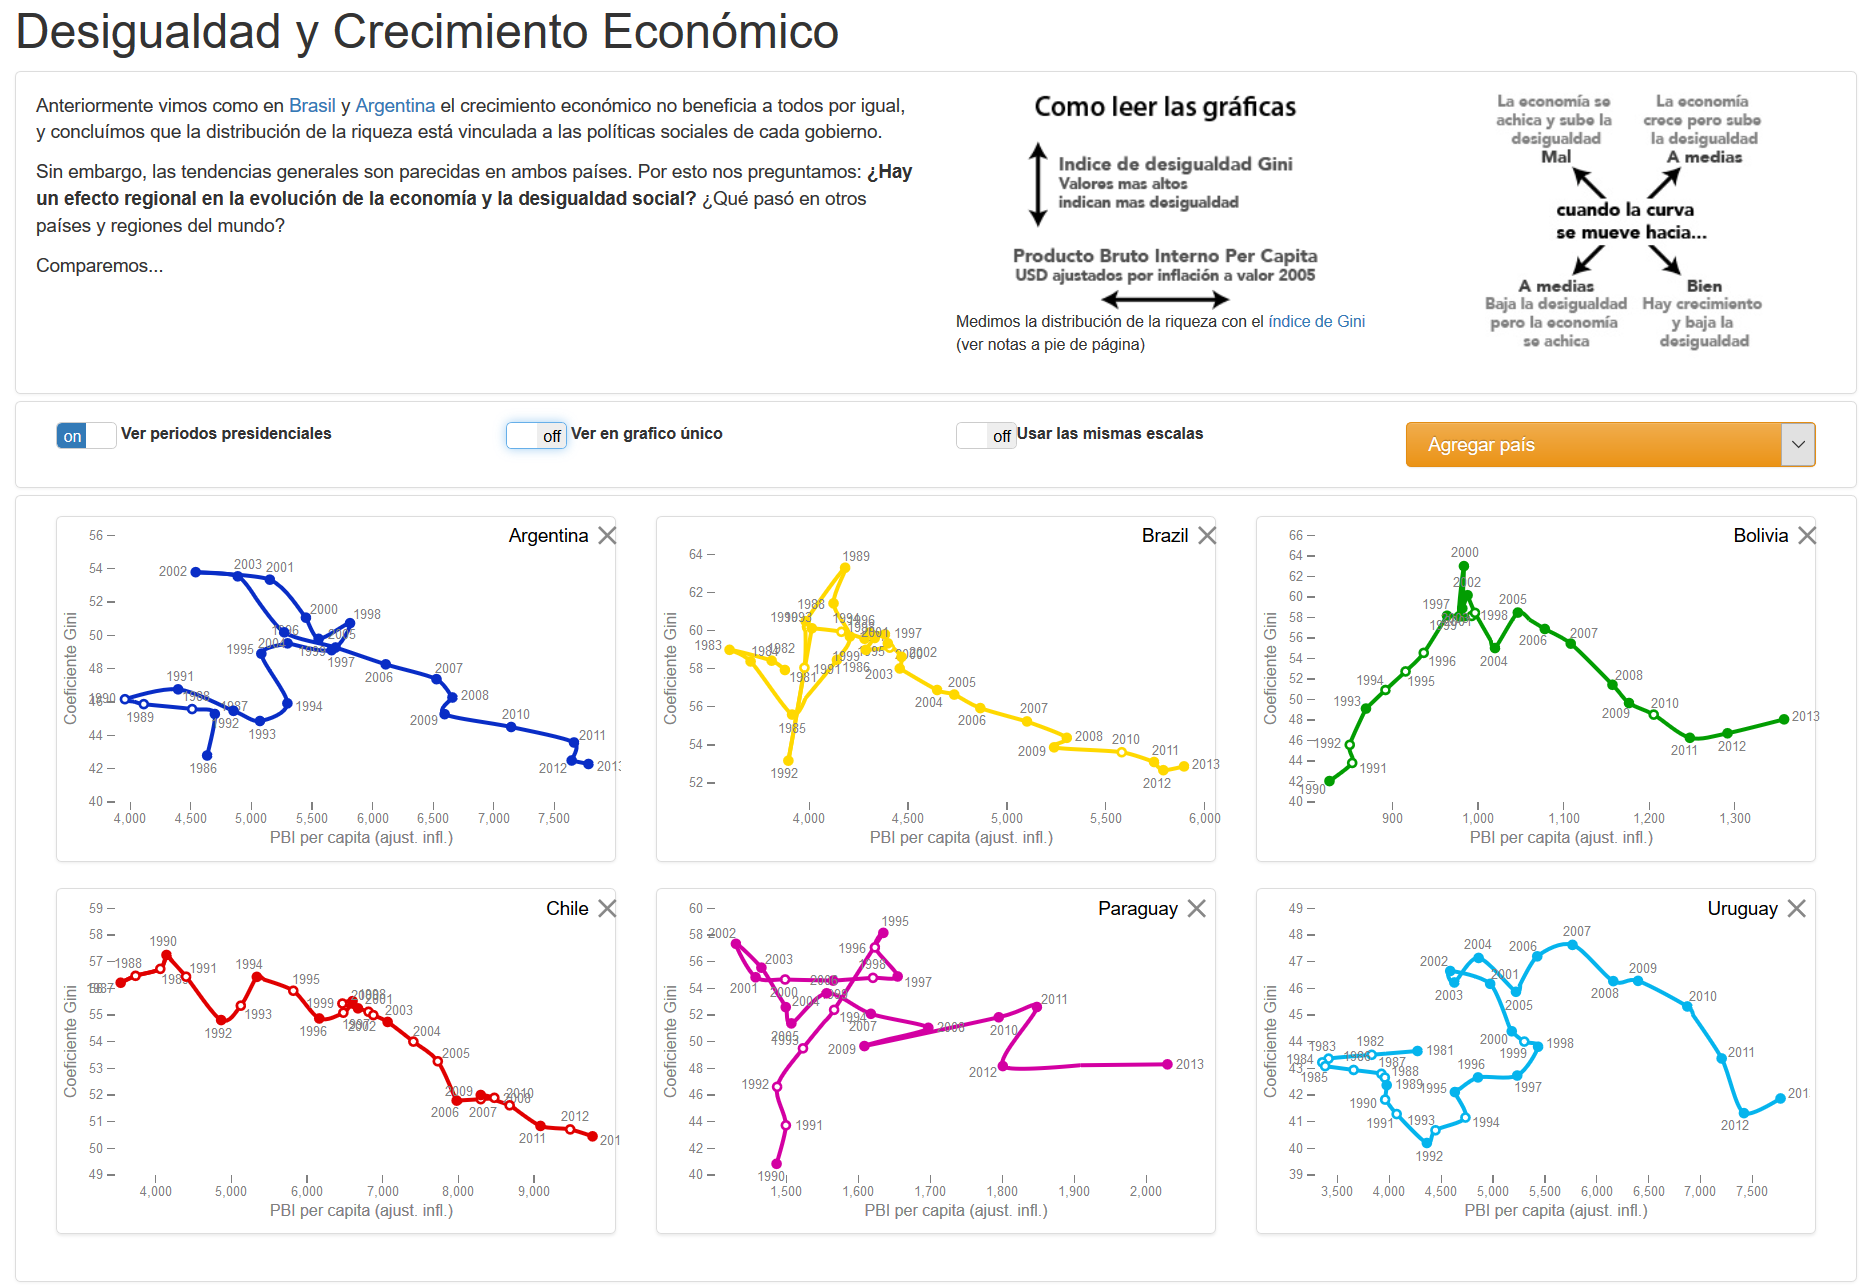 Versión interactiva de Desigualdad y Crecimiento Económico, por el Grupo de Visualización Científica del Barcelona Supercomputing Center.